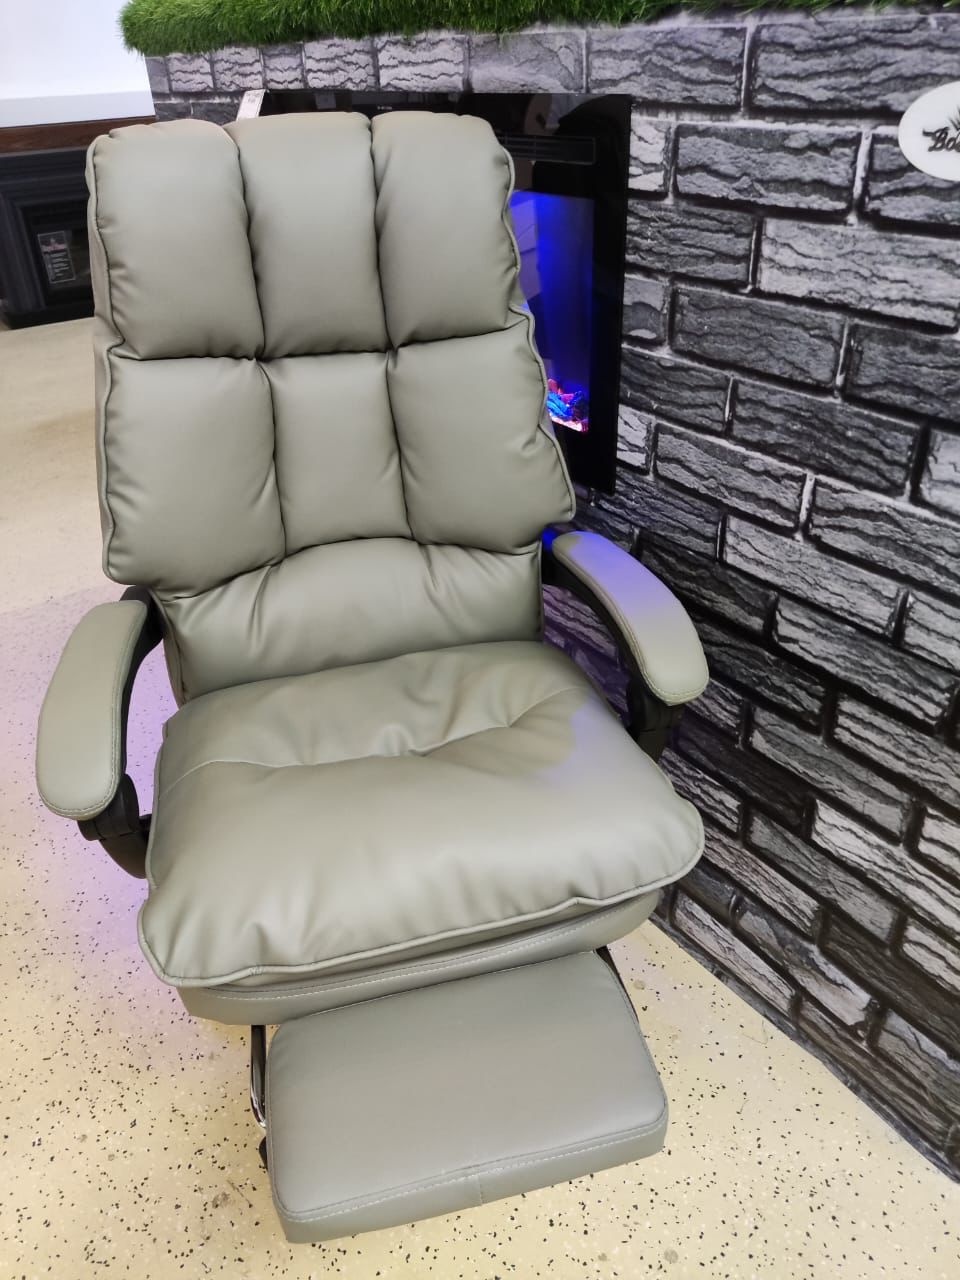 Кресло офисное - 0 ₽, заказать онлайн.